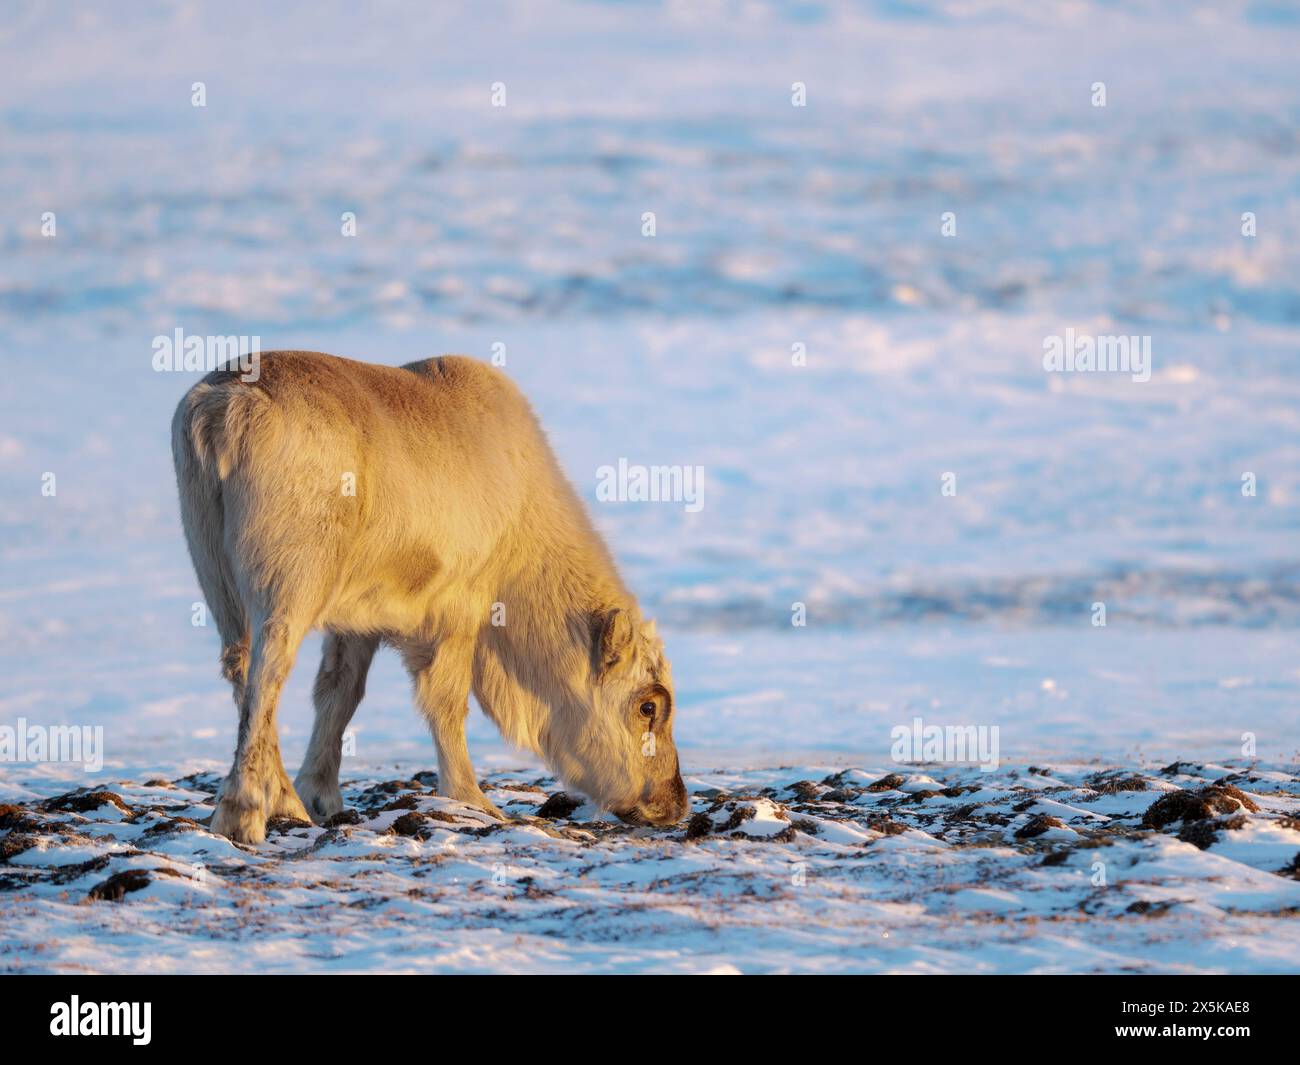 Renna Svalbard maschile vicino a Longyearbyen, una sottospecie endemica di renna, che vive solo nelle Svalbard e non è mai stata addomesticata. Regioni polari, inverno artico. Foto Stock